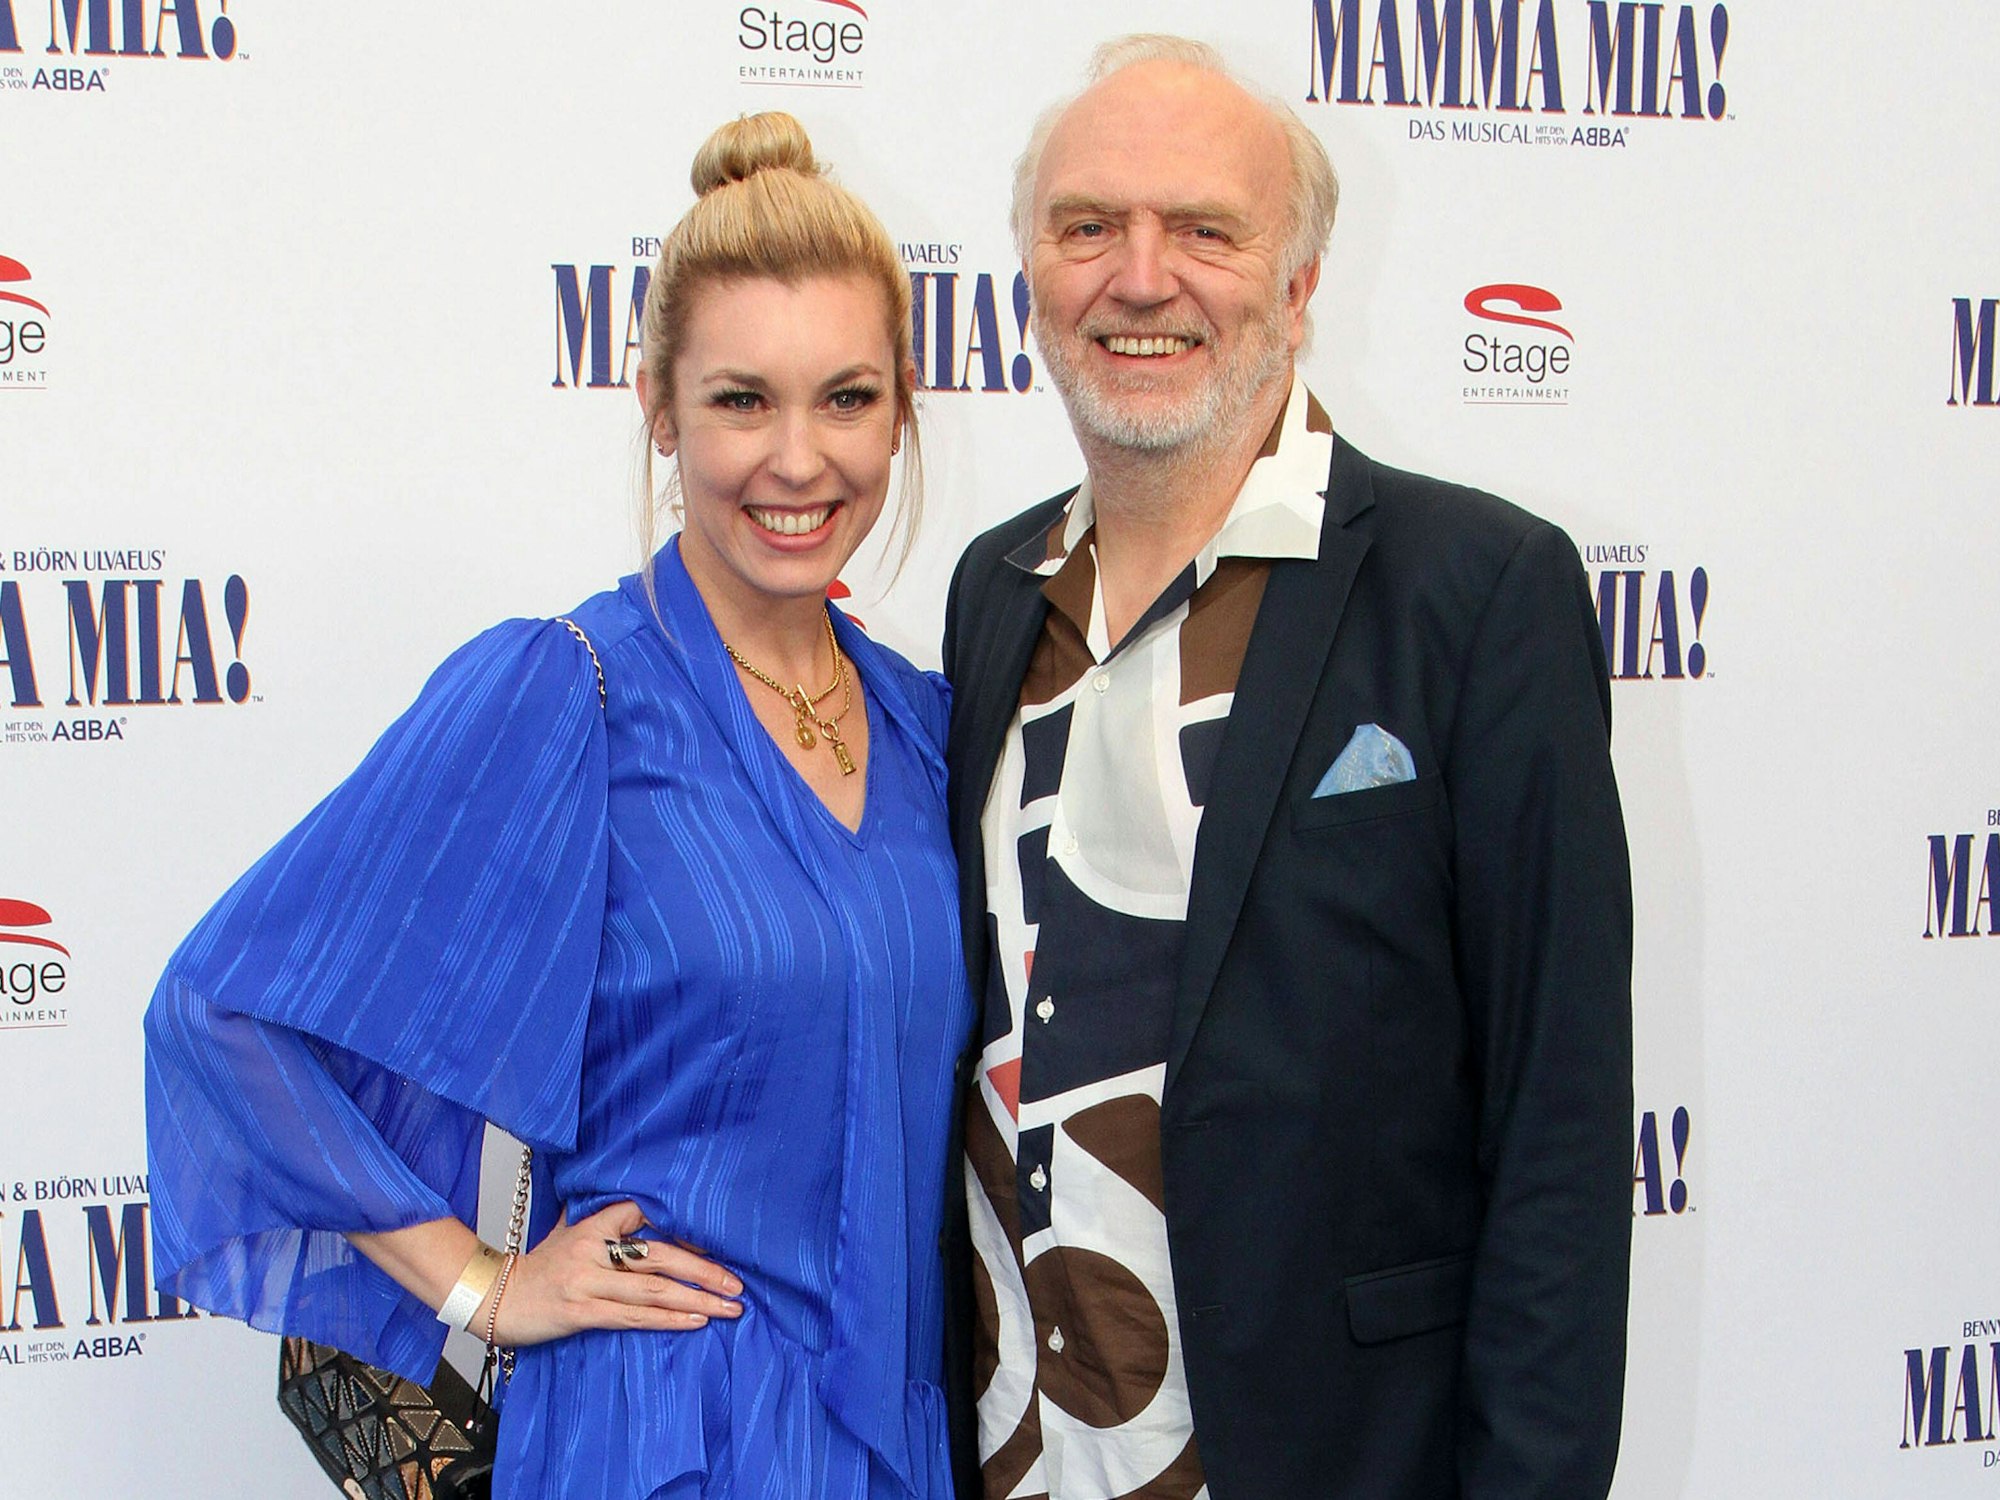 Janina Korn und Roland Heitz bei der Premiere des Musical Mamma Mia auf dem Roten Teppich.